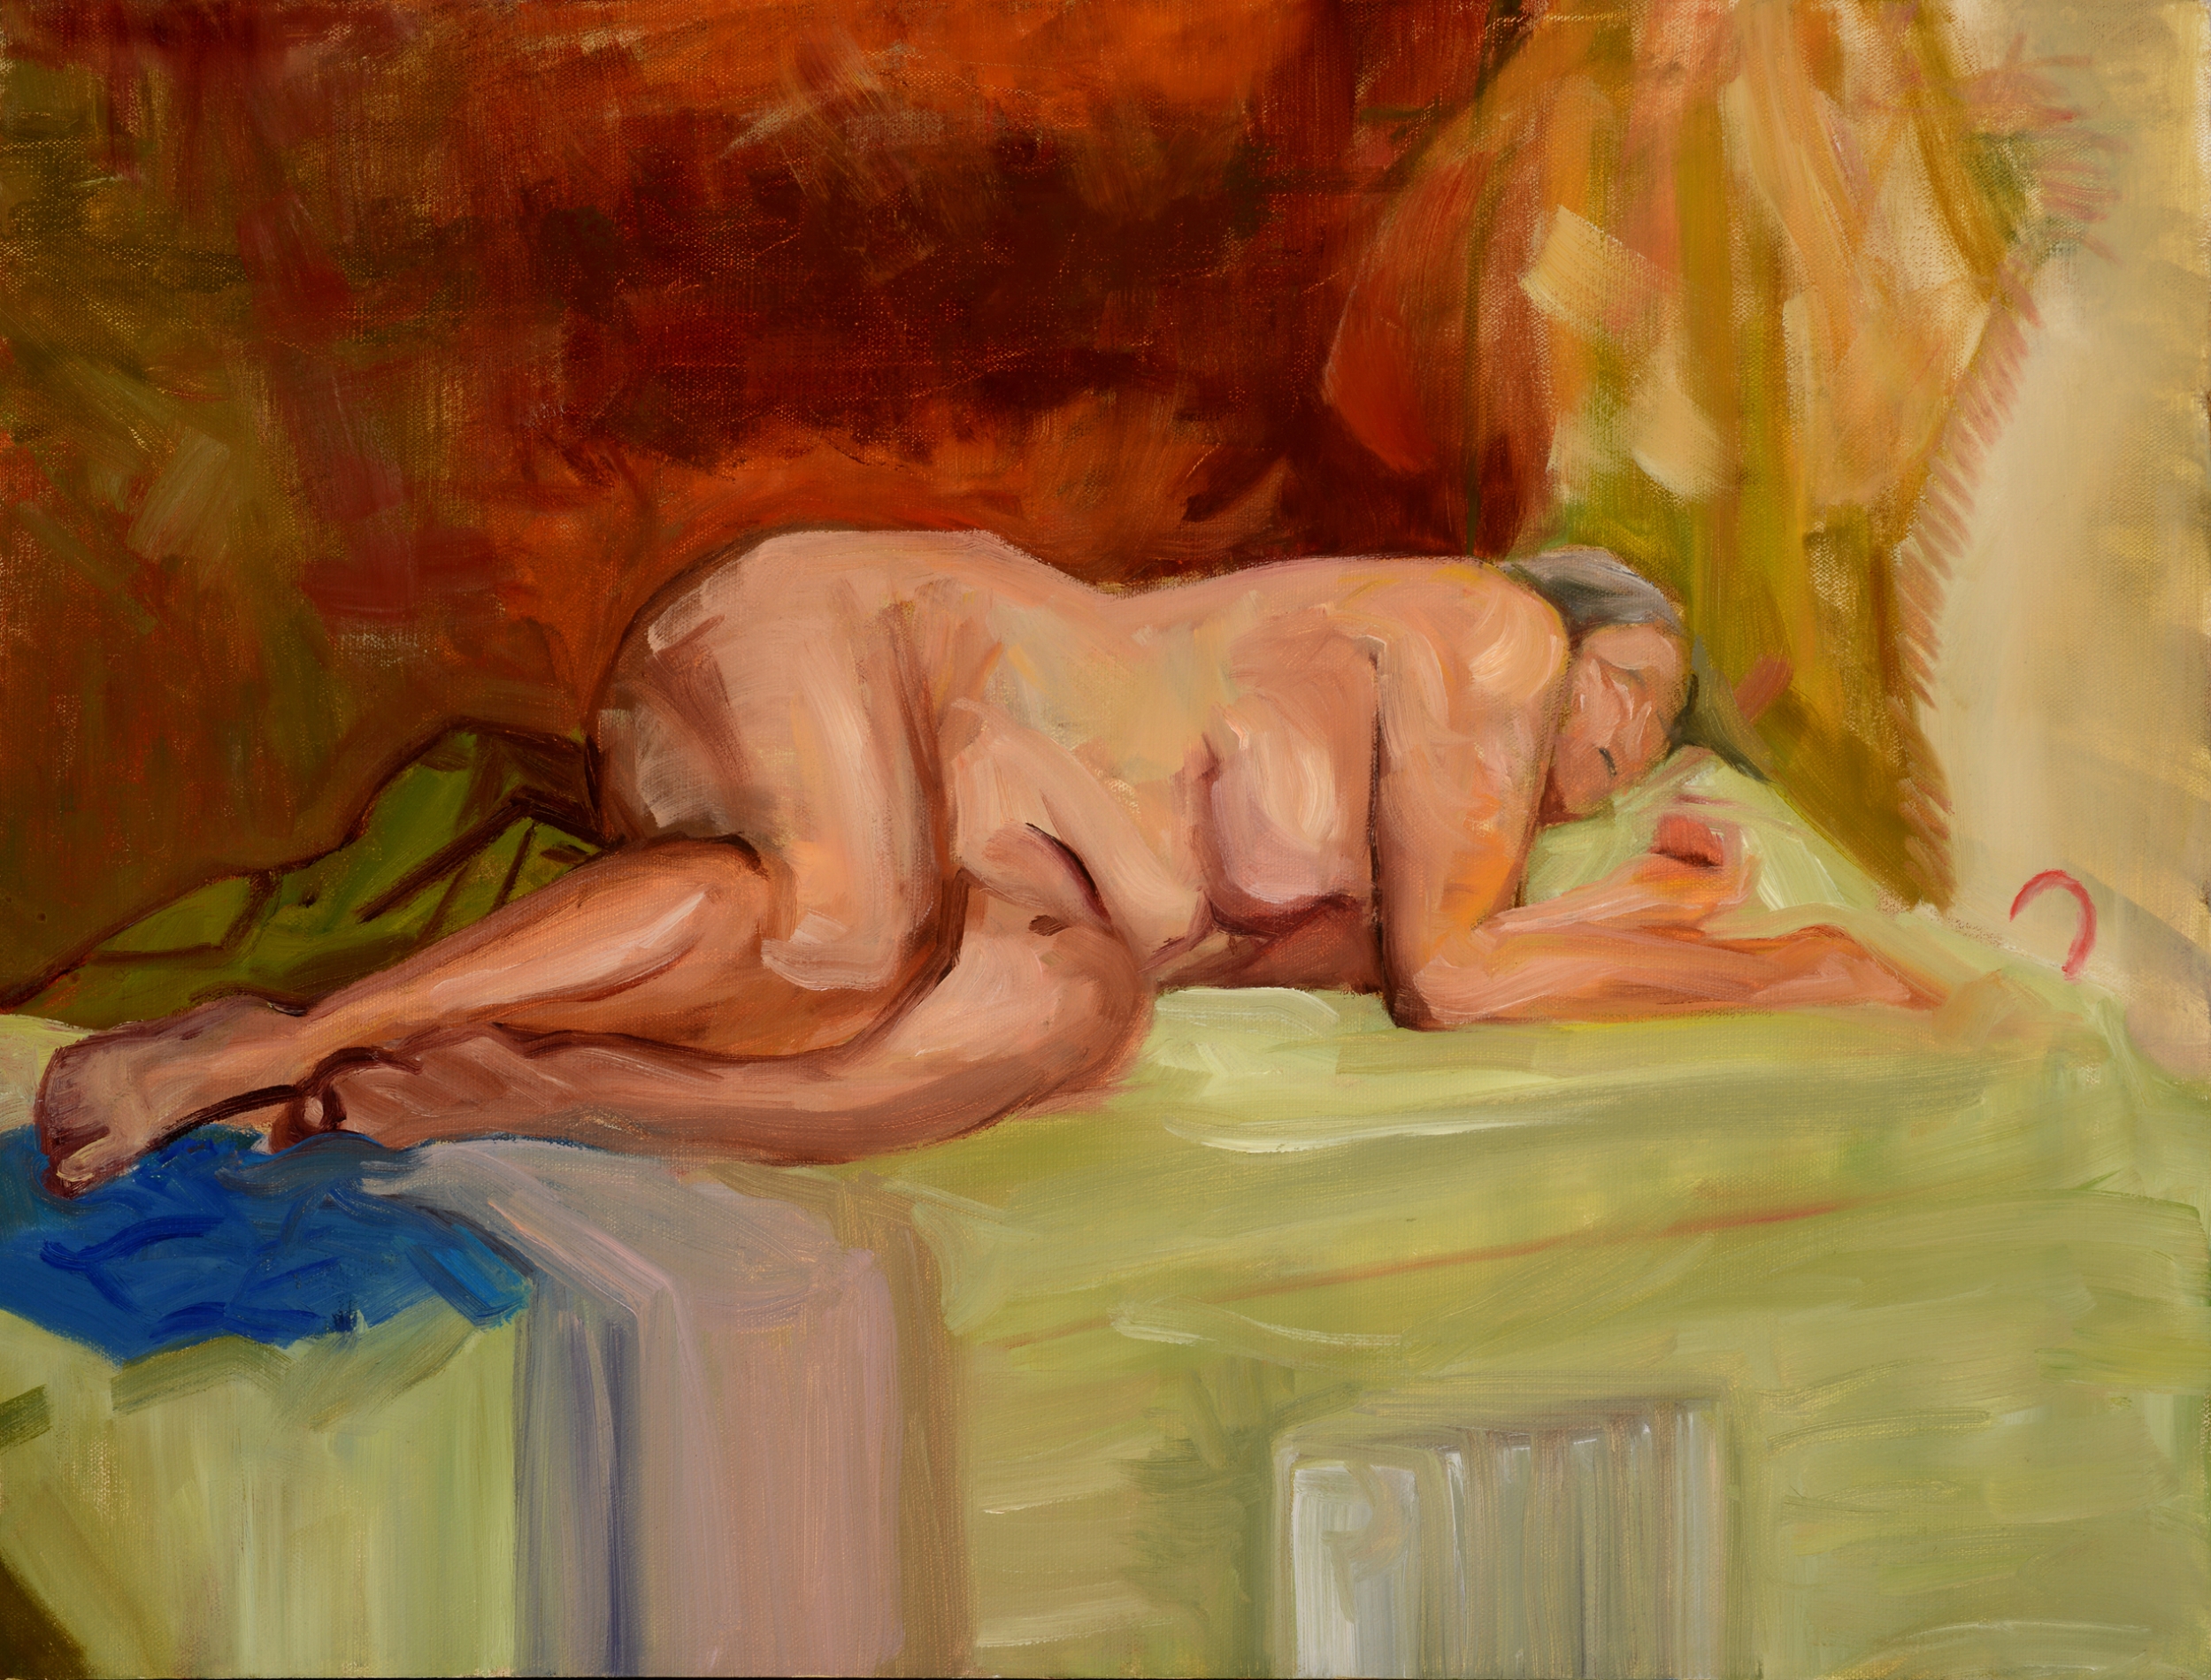 Sleeper. Oil on canvas. 2012.